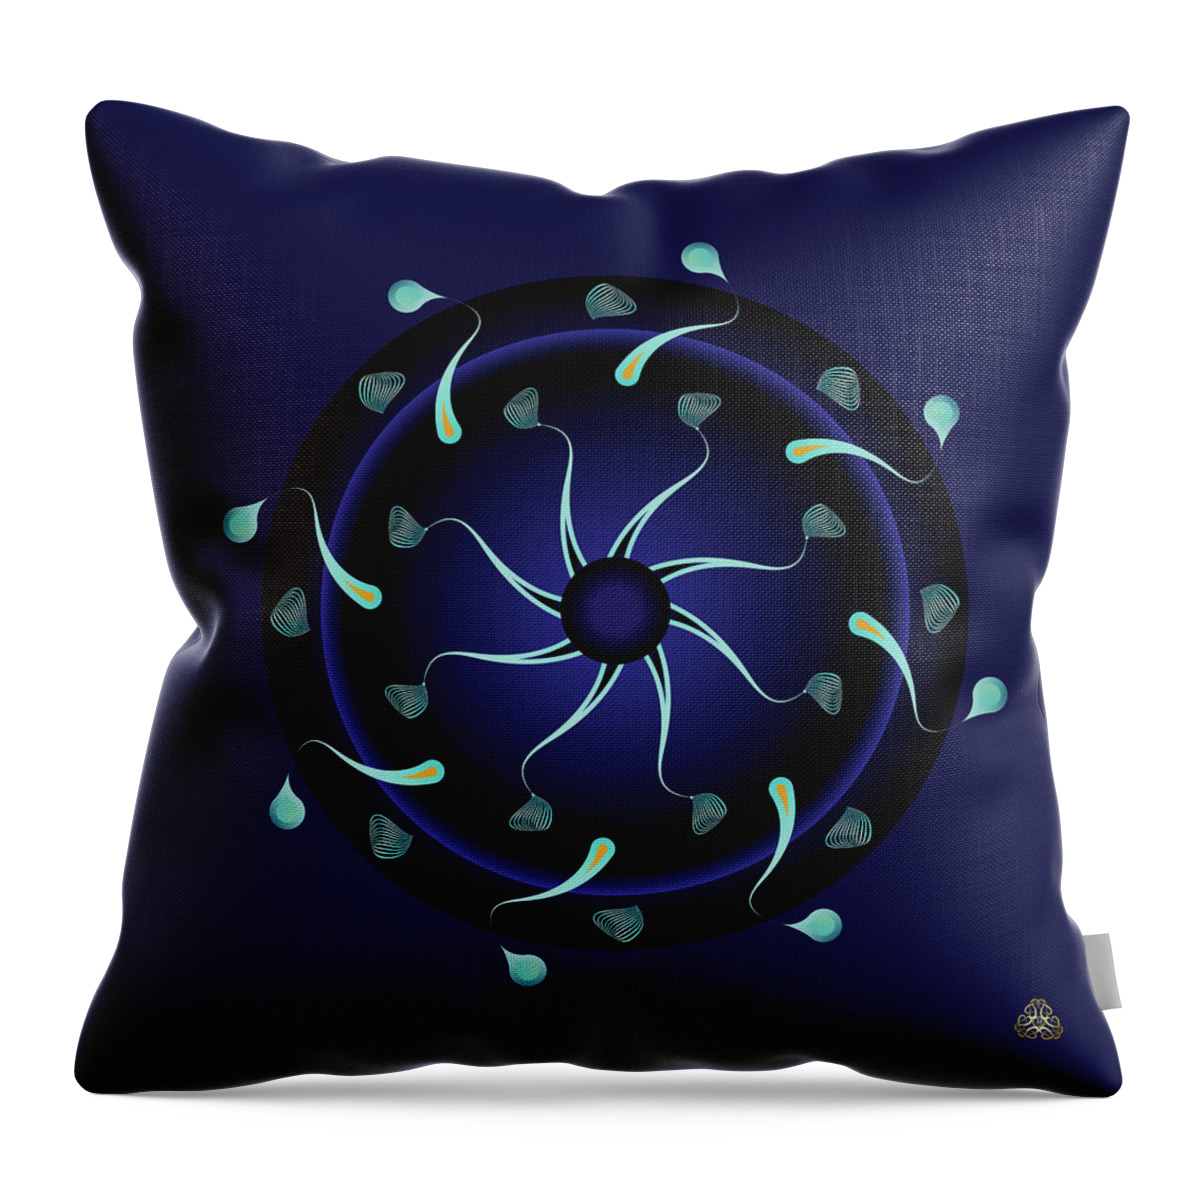 Mandala Throw Pillow featuring the digital art Kuklos No 4367 by Alan Bennington